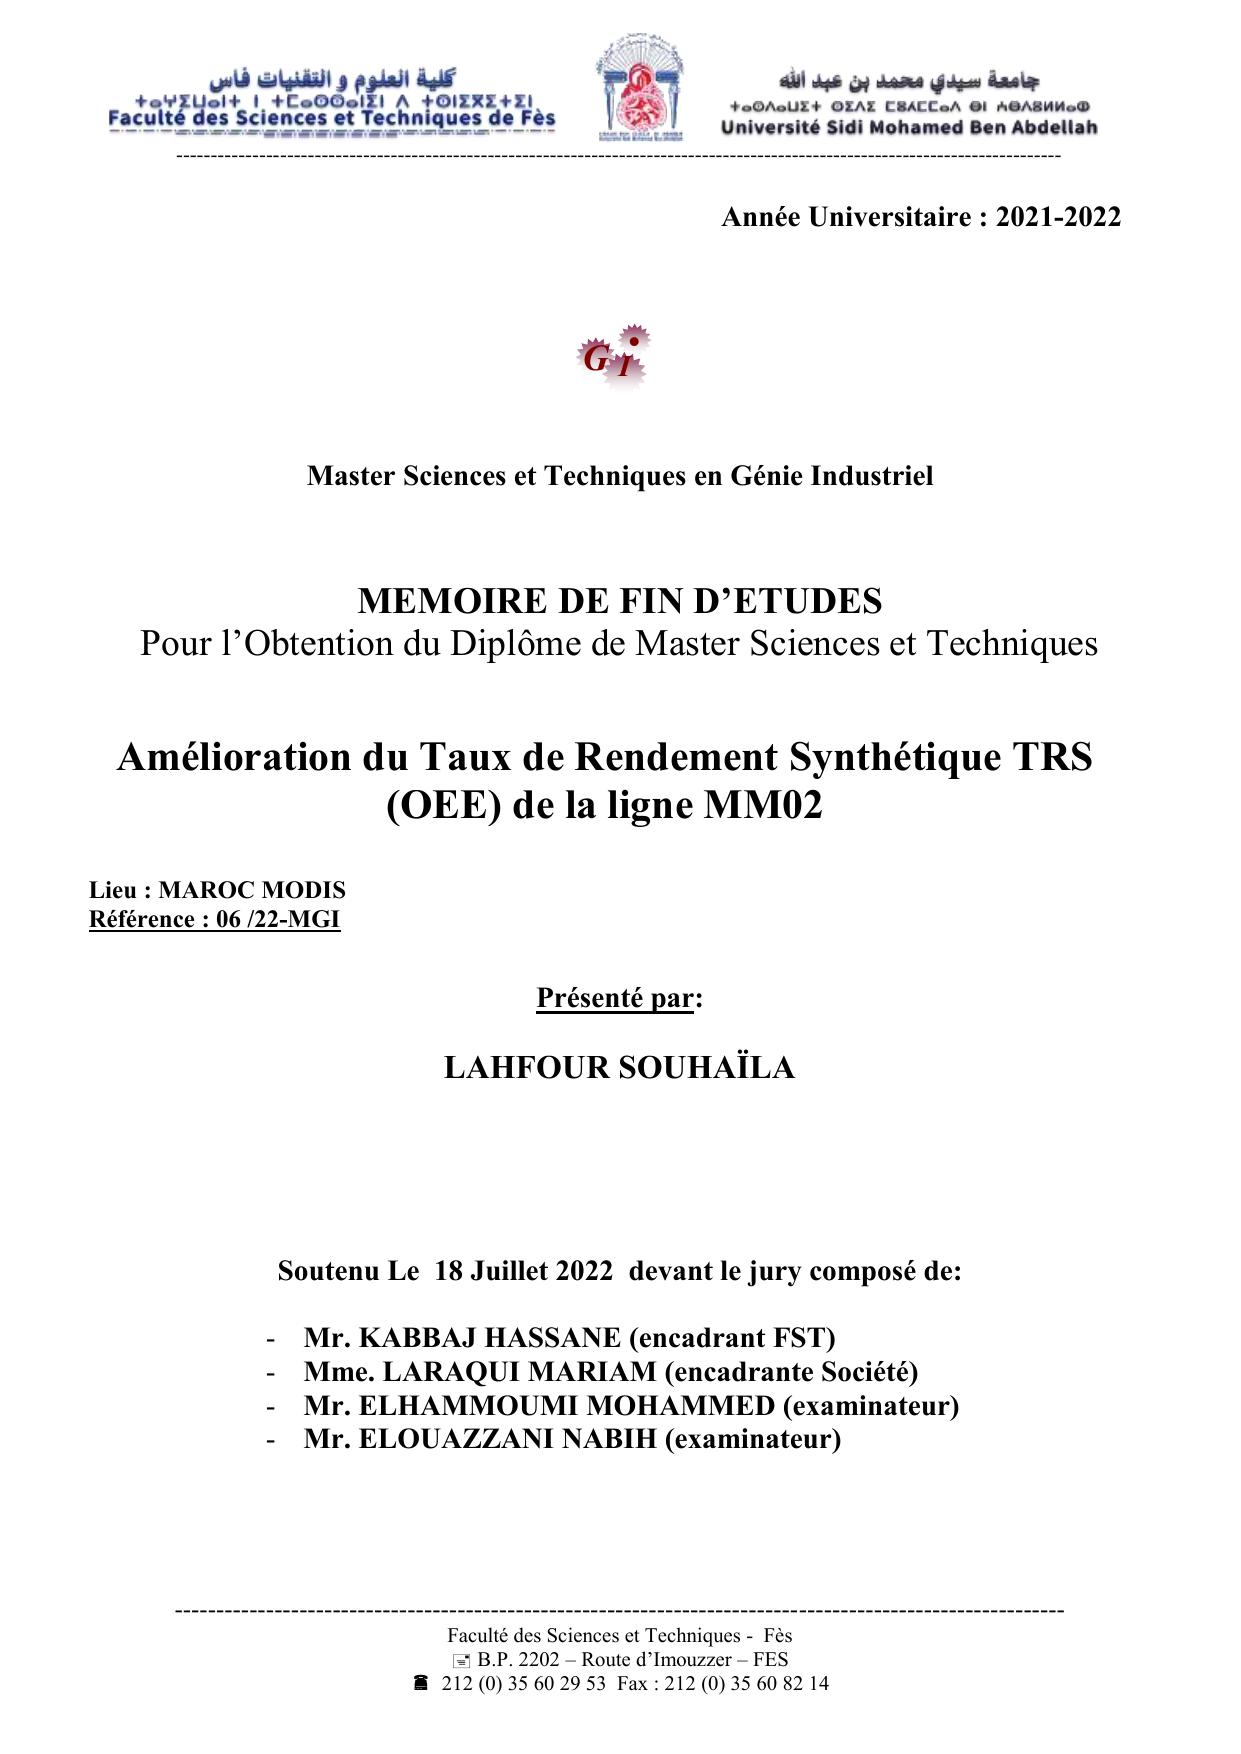 Amélioration du Taux de Rendement Synthétique TRS (OEE) de la ligne MM02